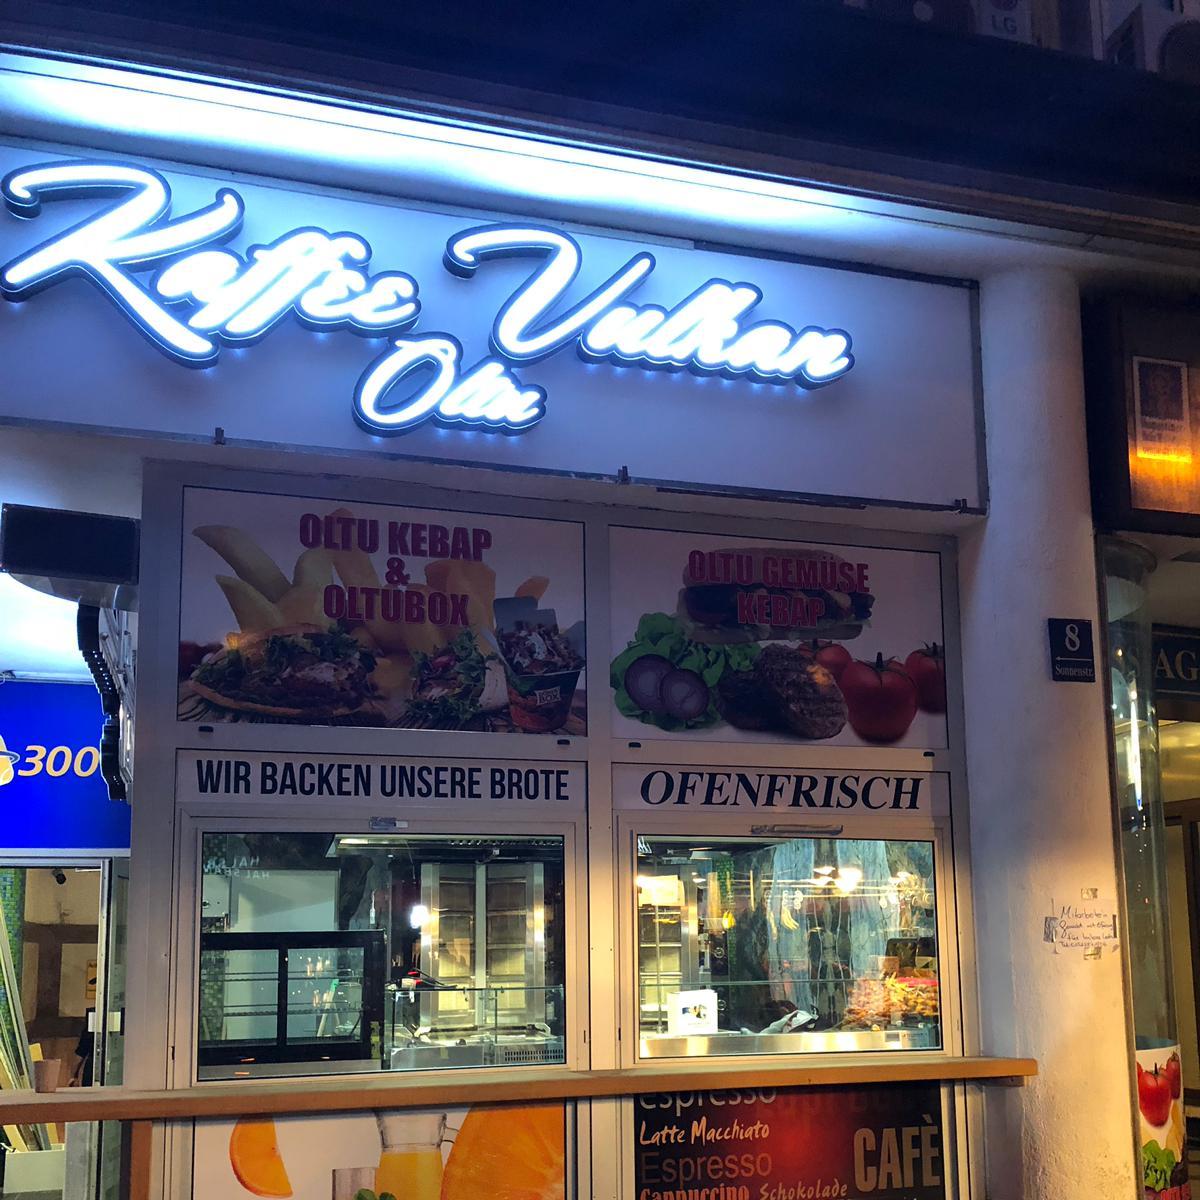 Restaurant "Vulkan Kebab Oltu" in München